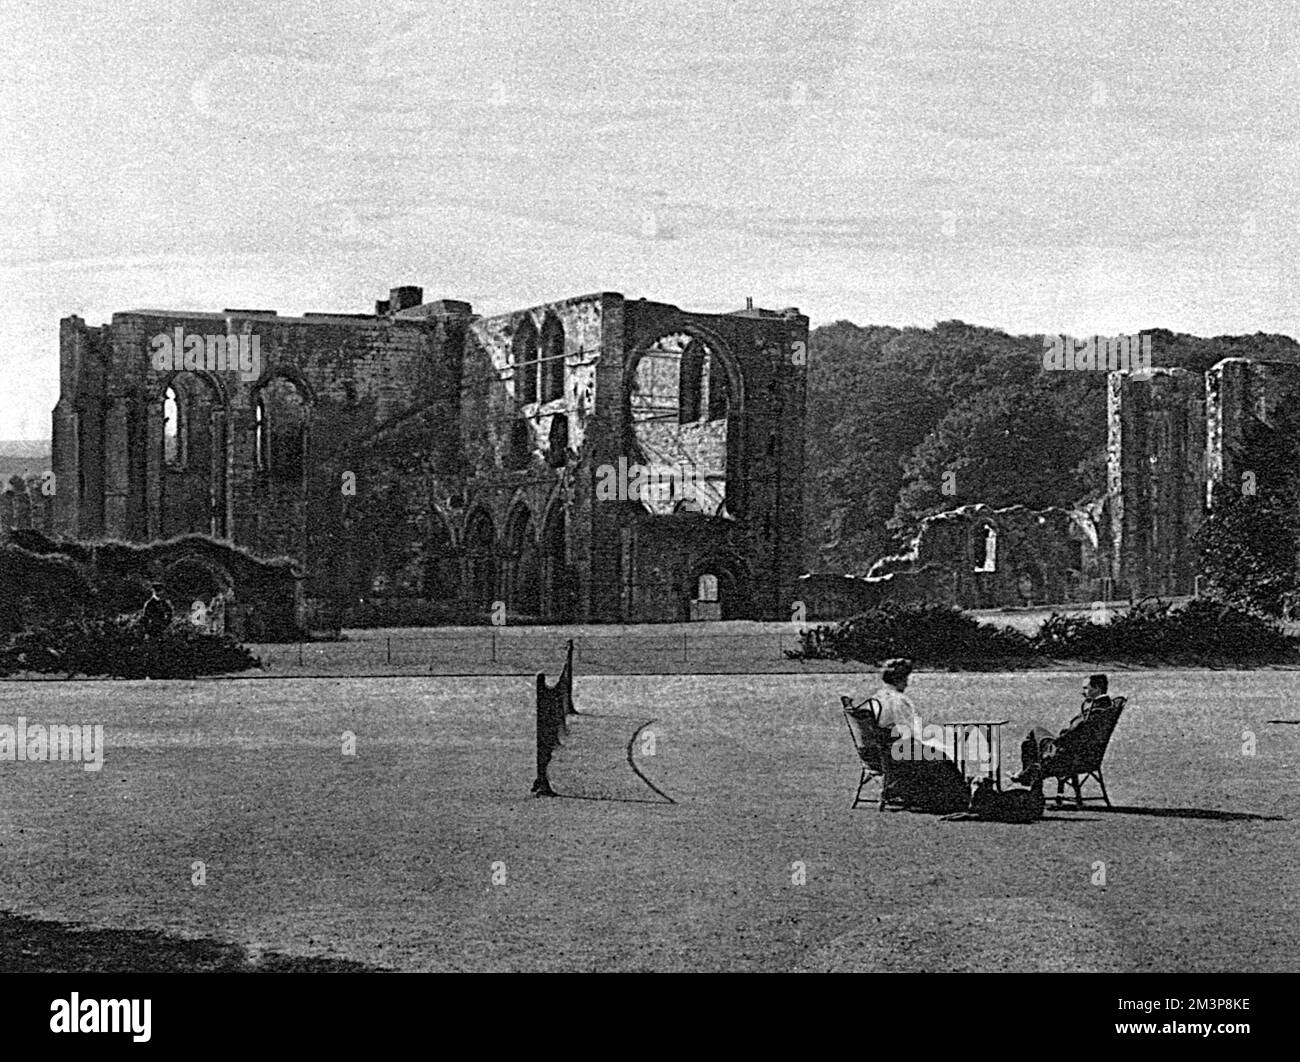 Furness Abbey, die berühmte Ruine von Lancashire, die von normannischen Mönchen im 12. Jahrhundert auf Vorschlag von König Stephen erbaut wurde. Datum: 1921 Stockfoto